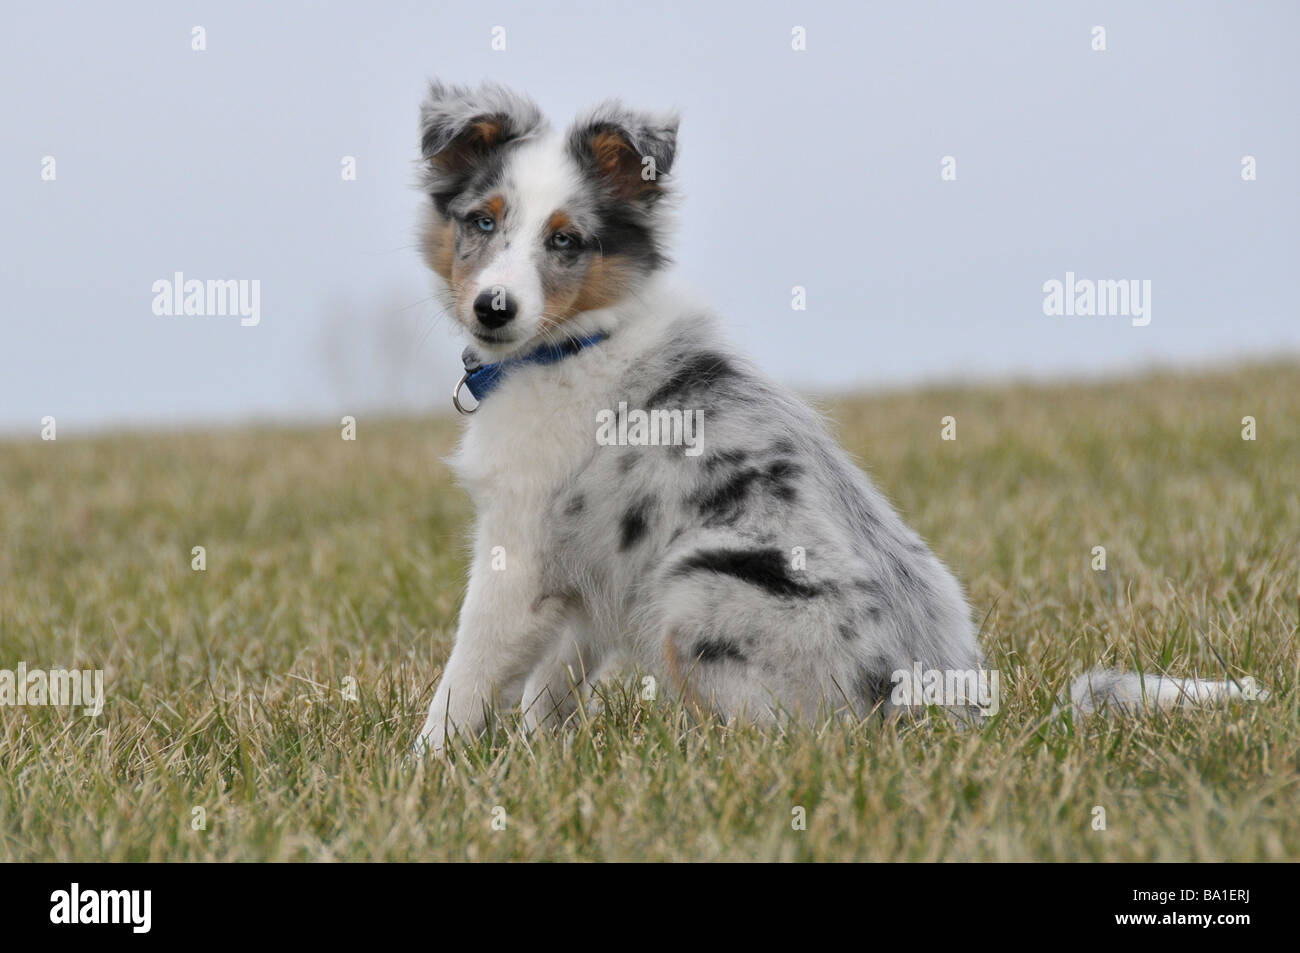 Shetland Sheepdog or Sheltie puppy sitting up. Stock Photo